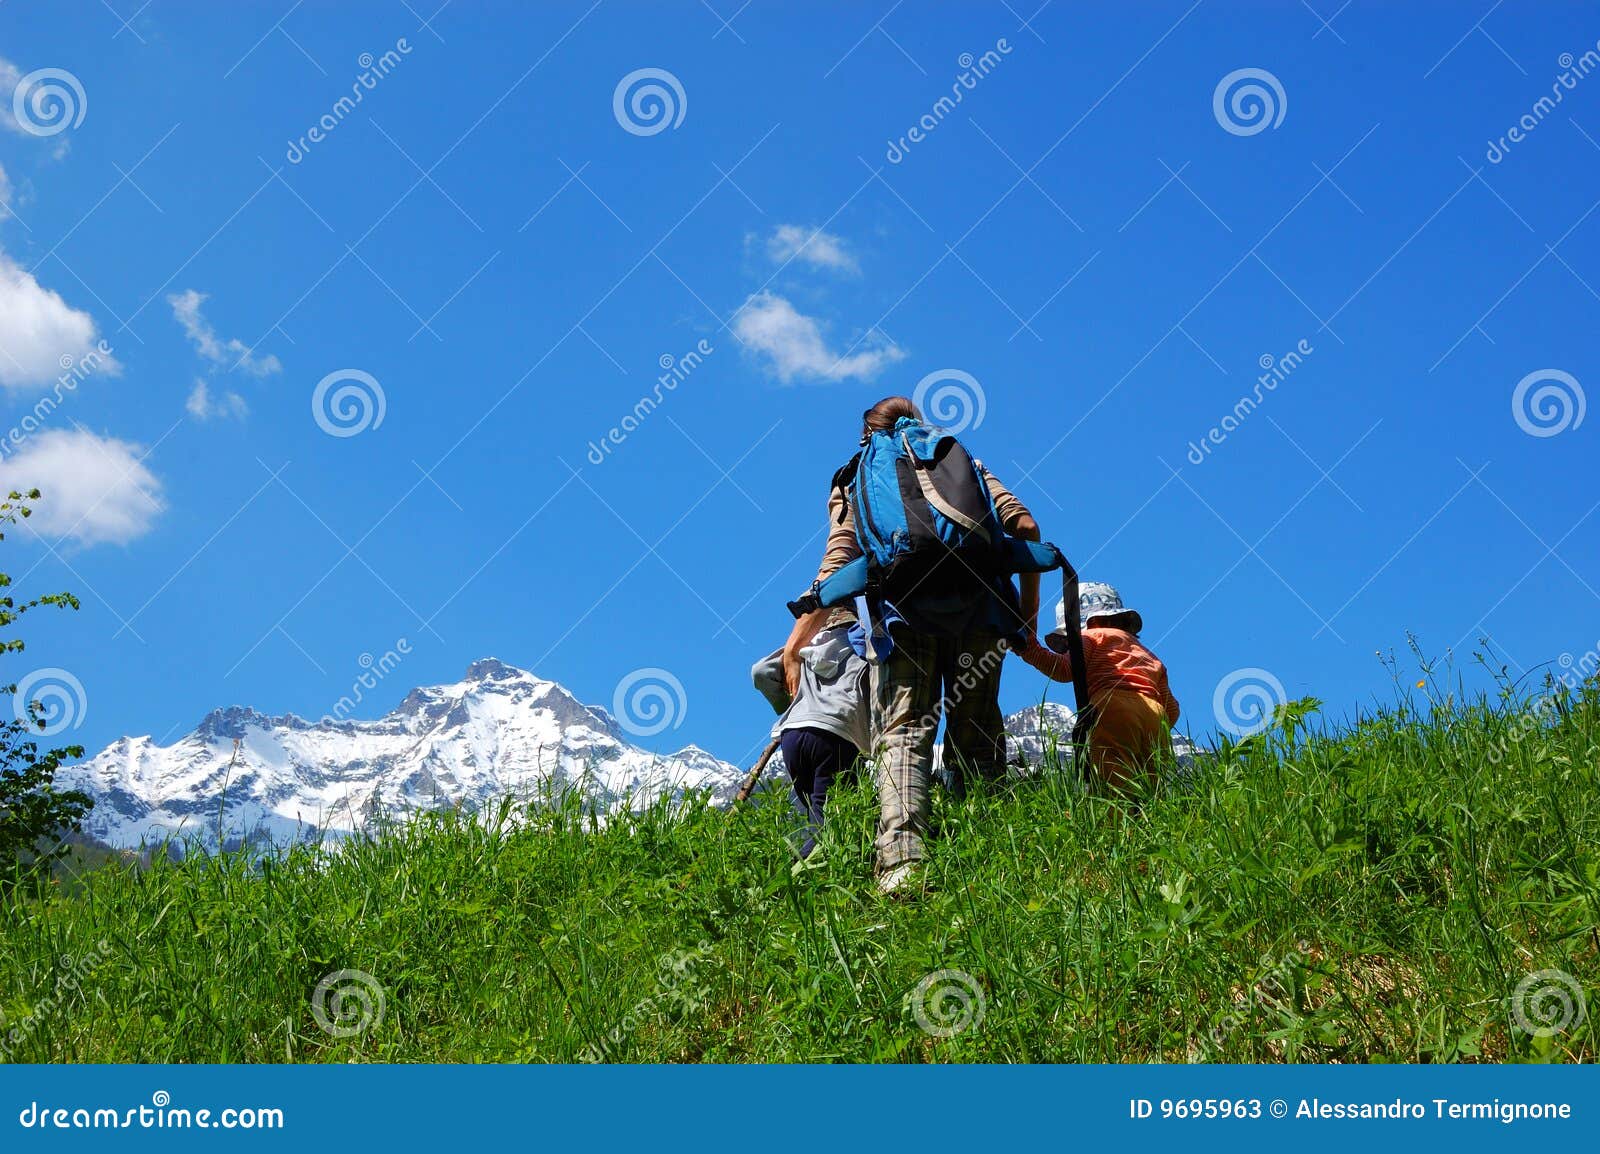 family trekking